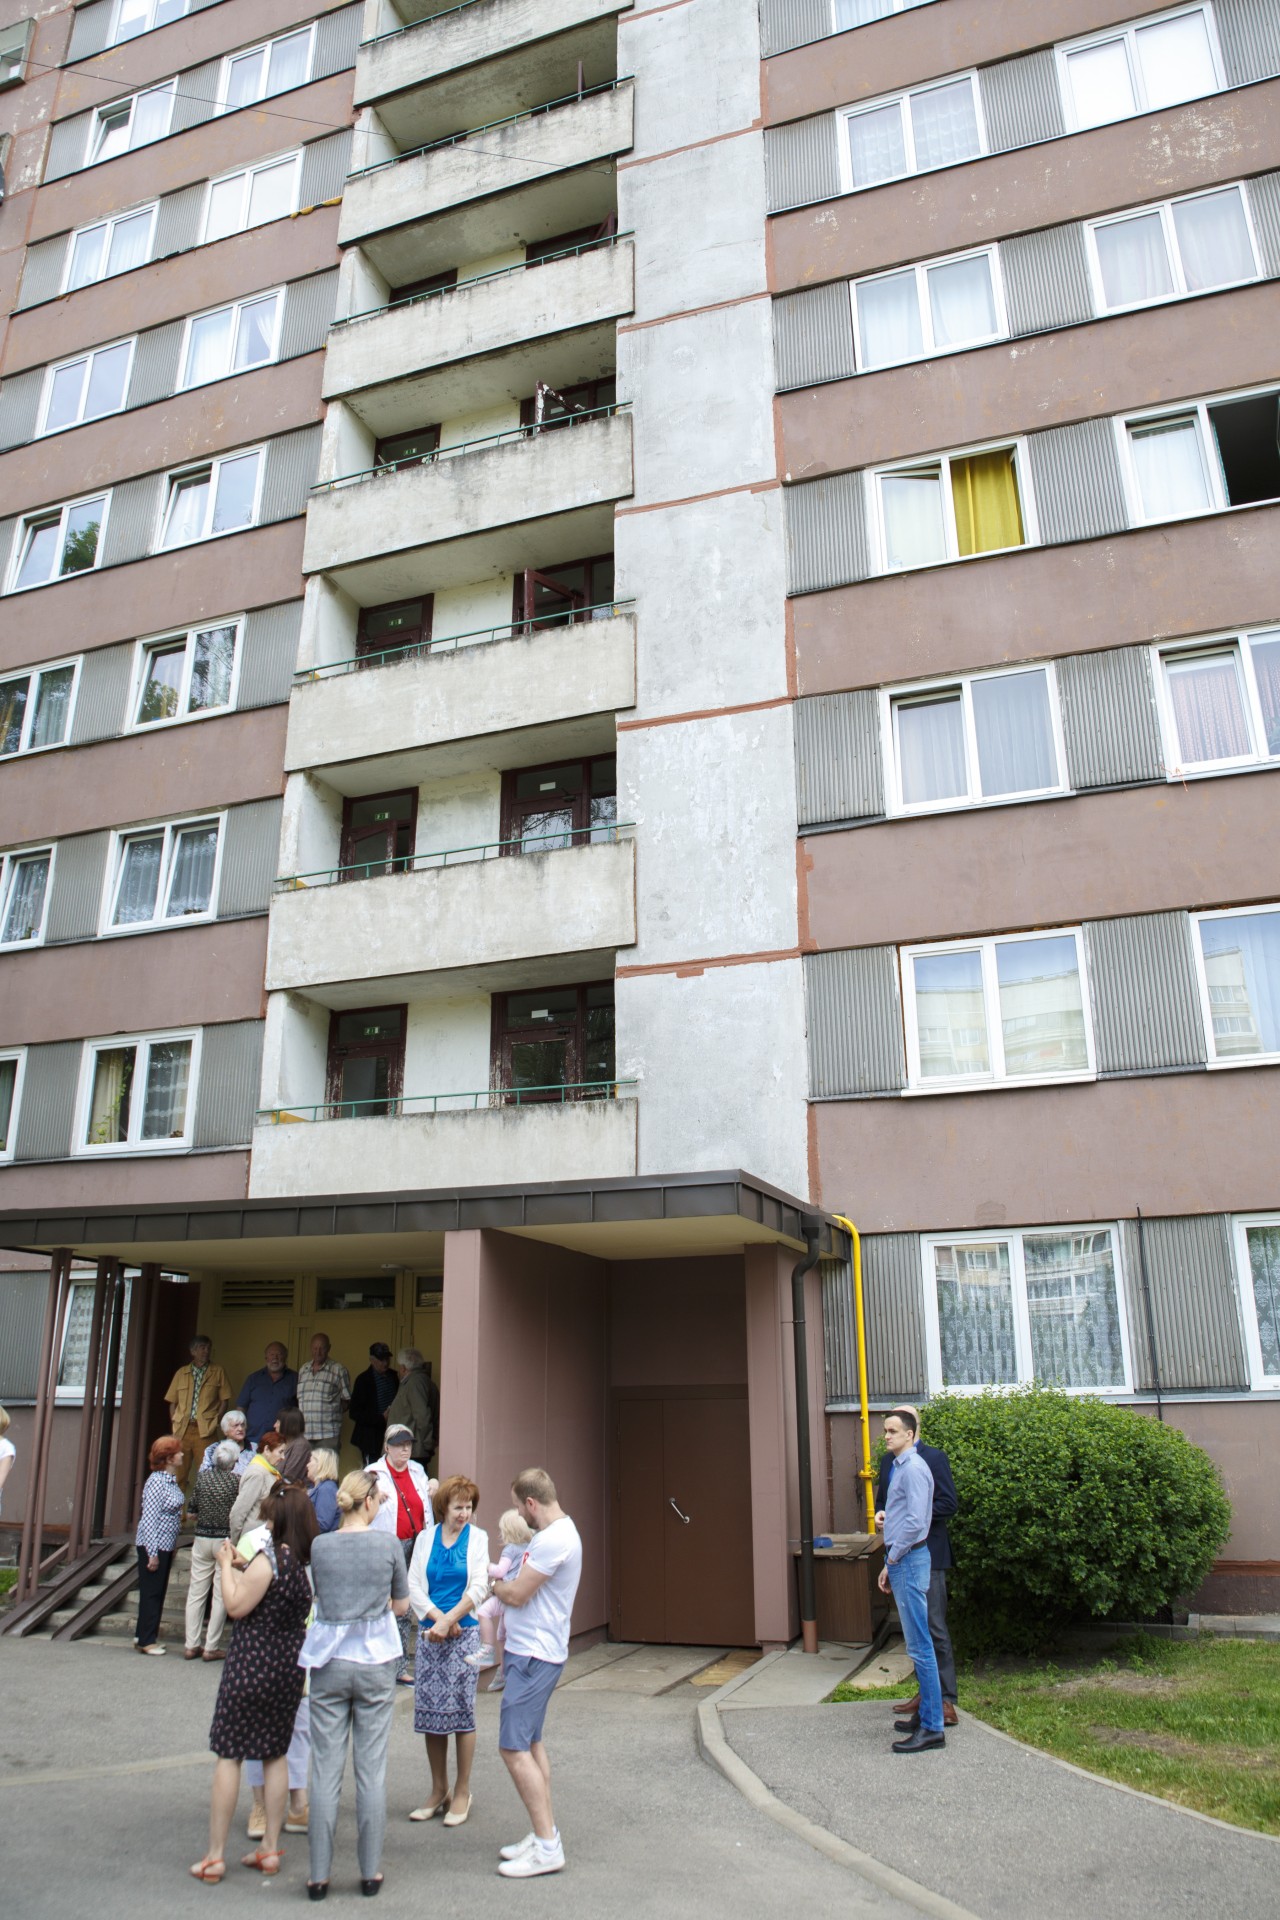 Ušakovs rullē! Pusmiljons eiro pašvaldības līdzfinansējuma dzīvojamo māju atjaunošanai  (Bilde 4)